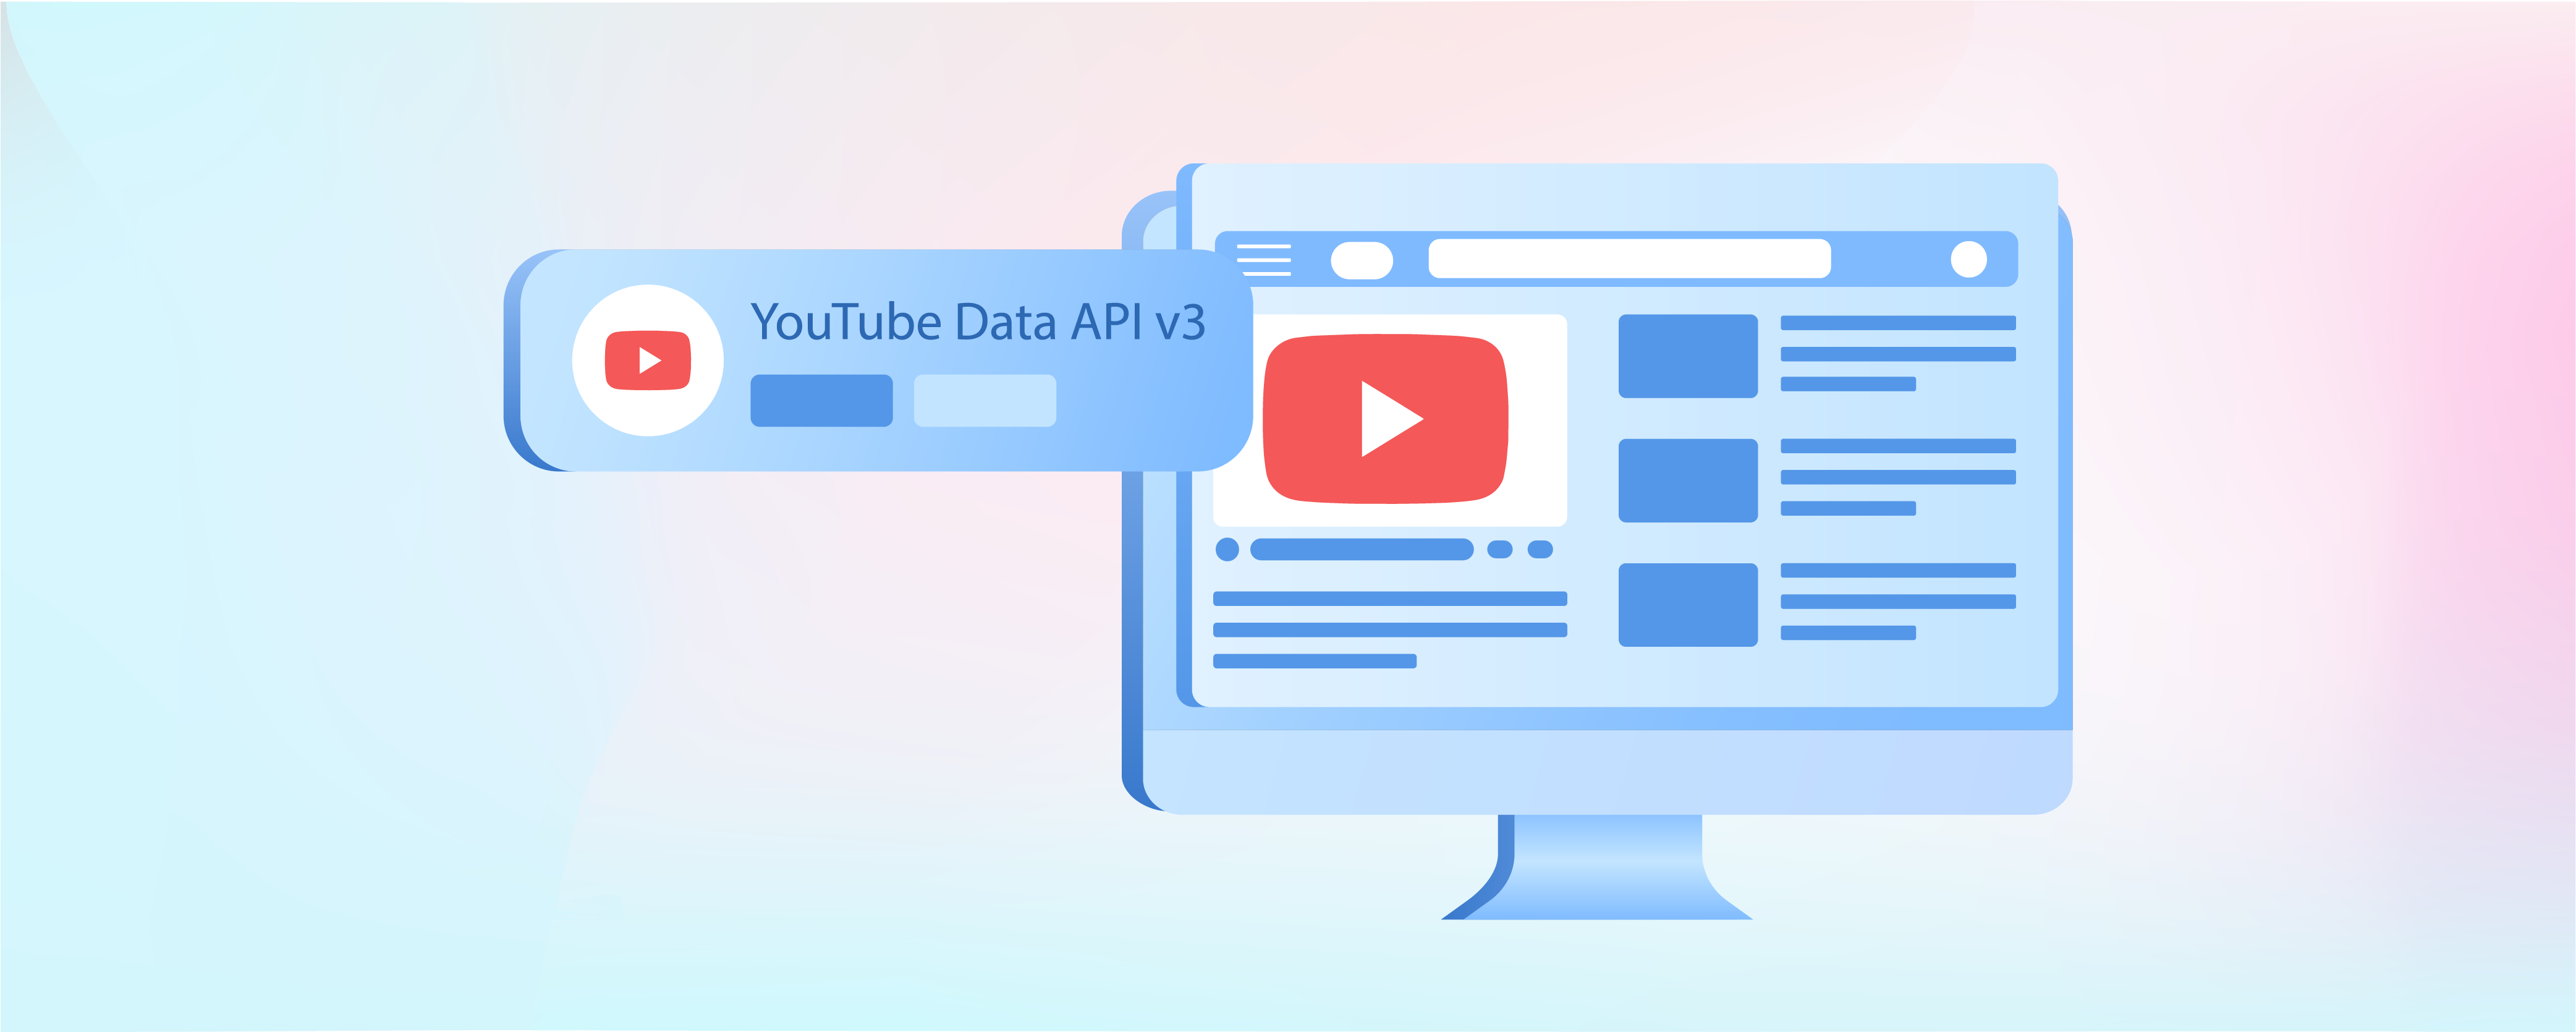 Magento 2 YouTube API Key: Upload Product Videos